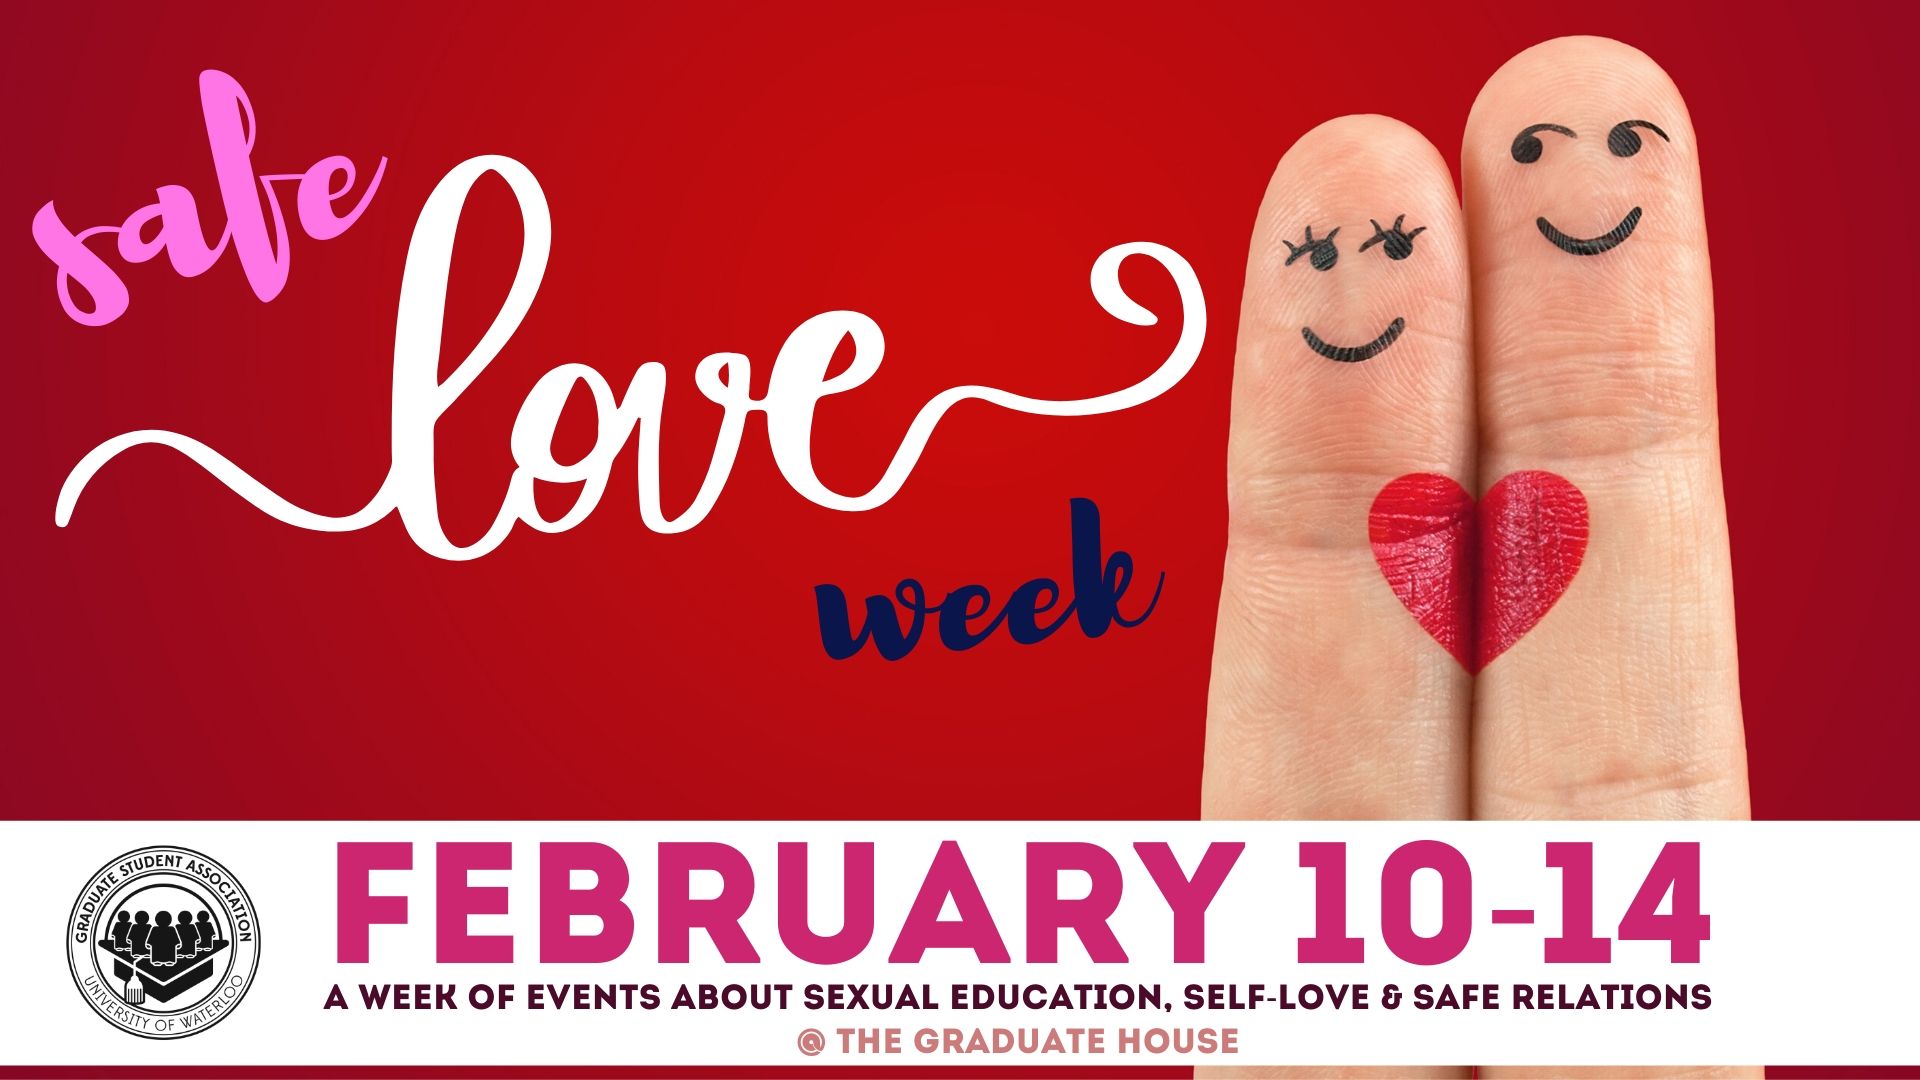 safe love week poster